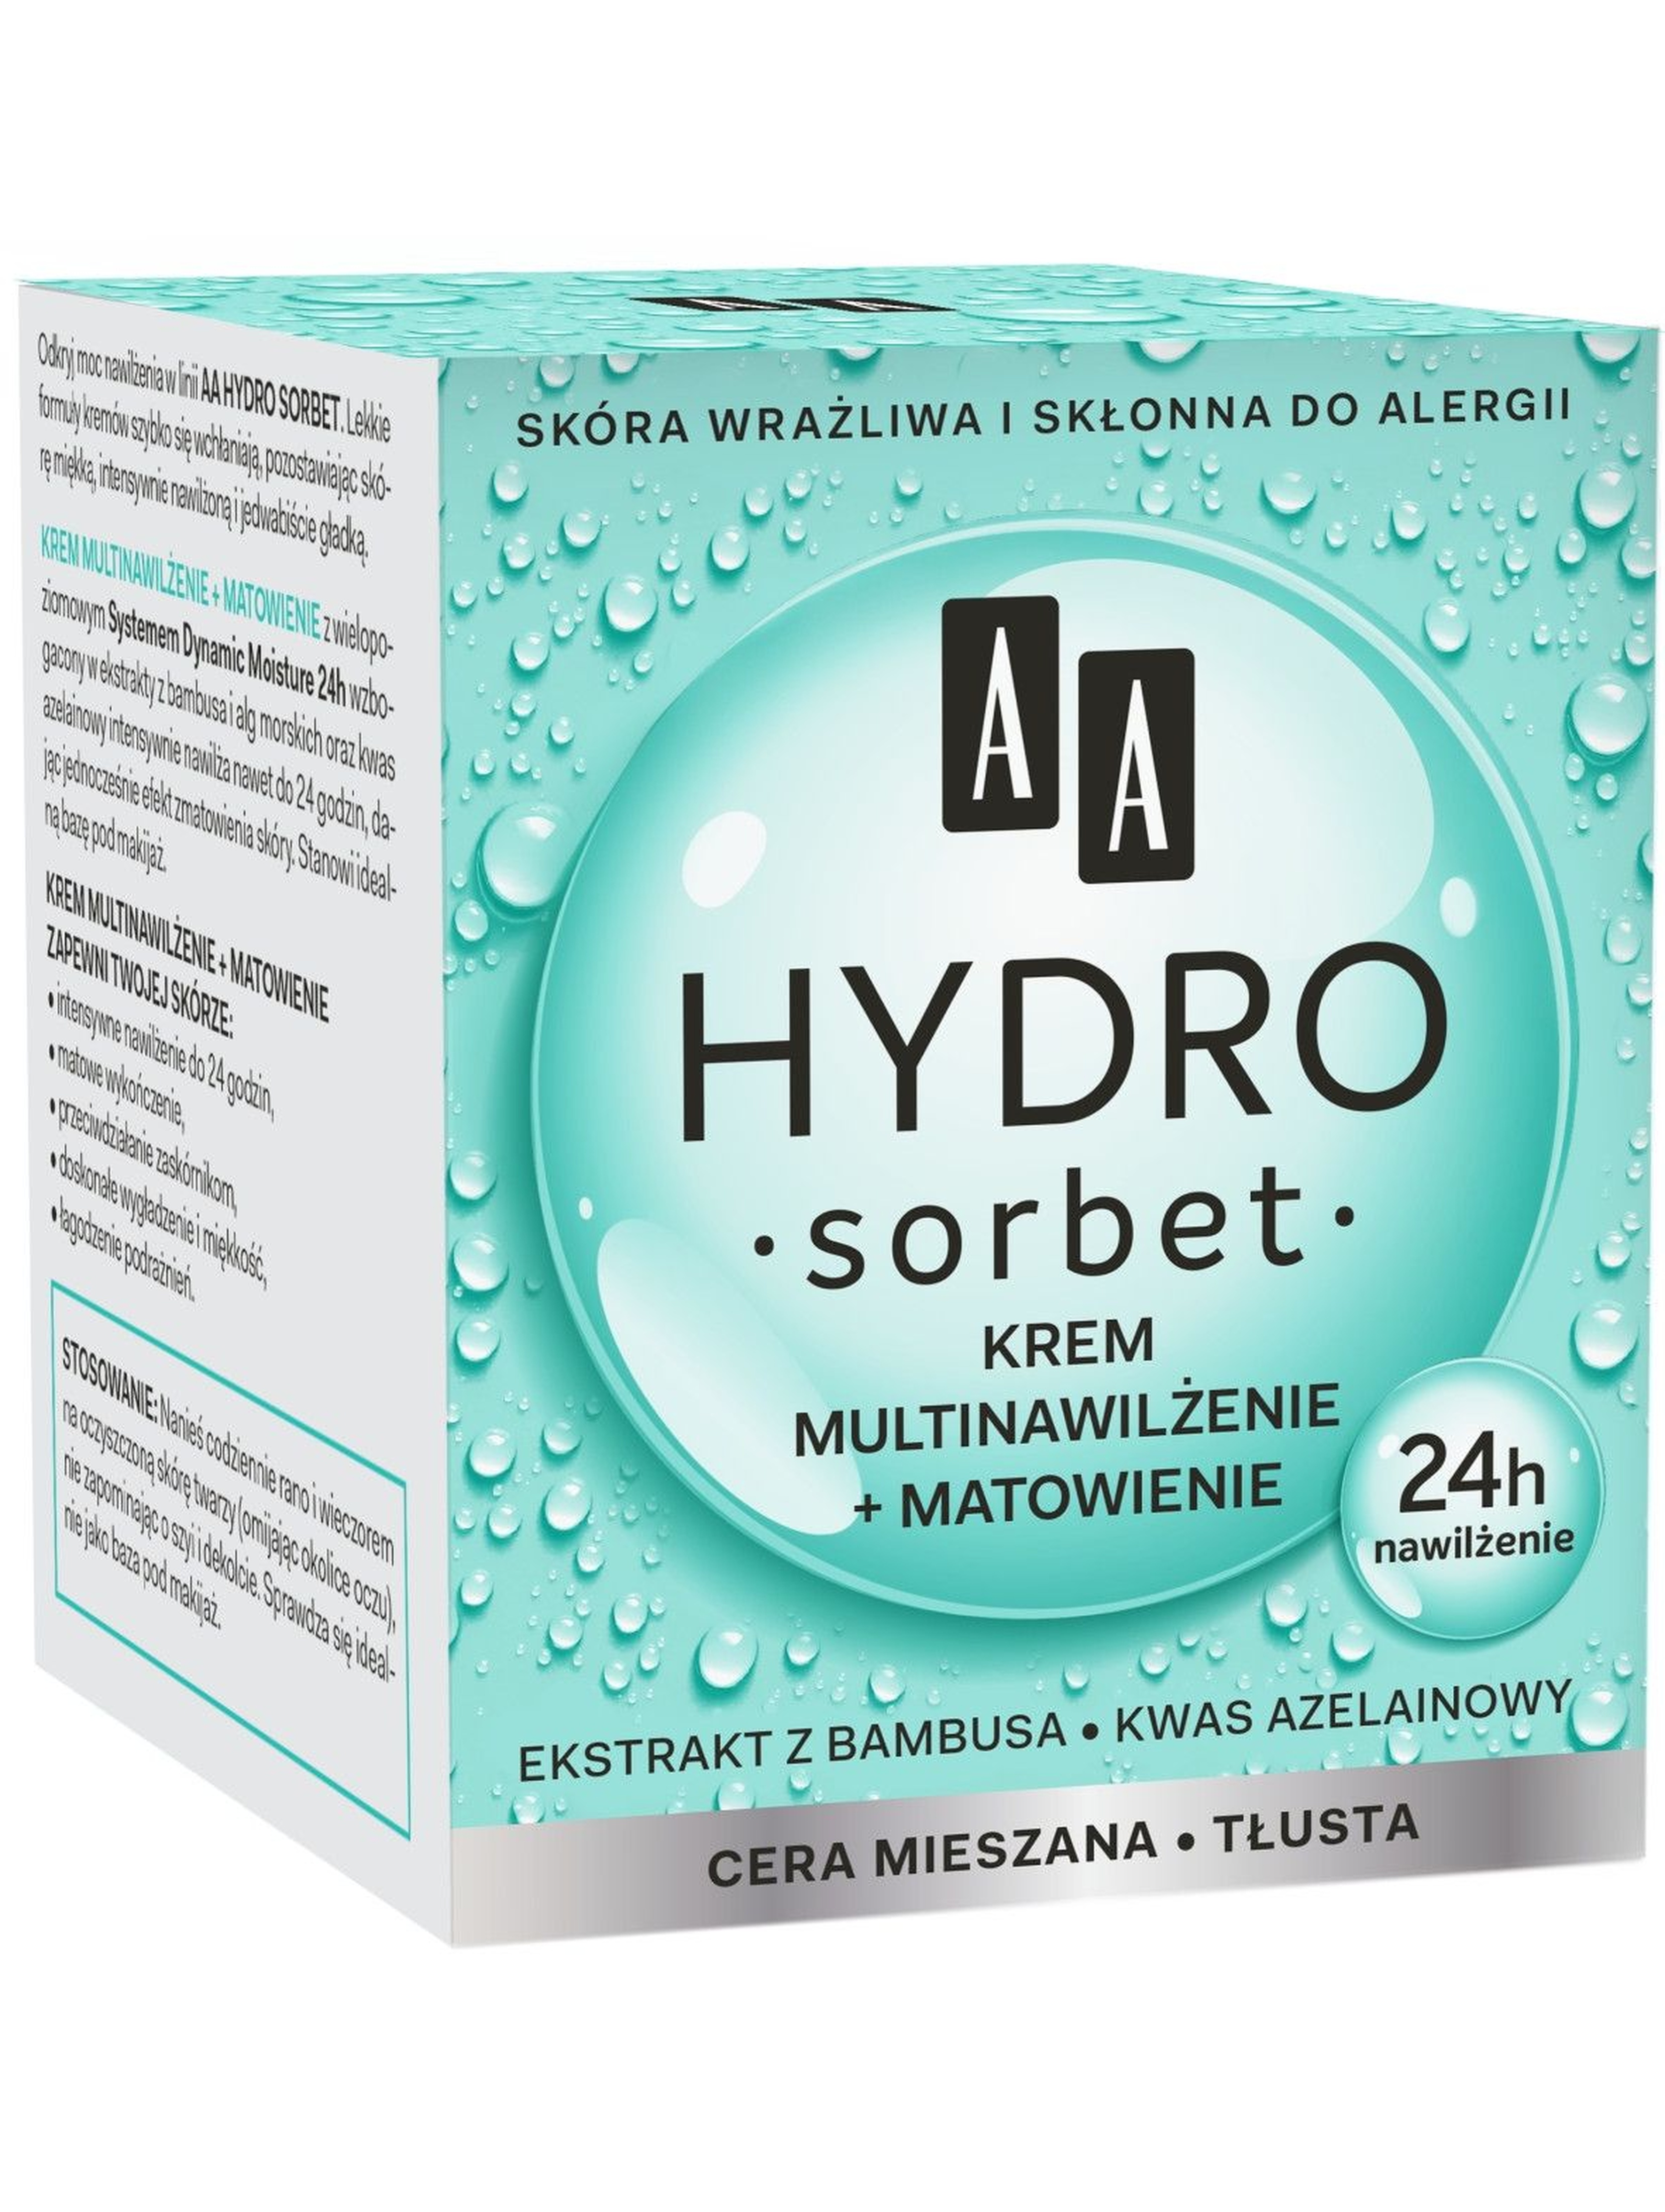 AA Hydro Sorbet krem multinawilżenie+matowienie cera mieszana/tłusta 50 ml